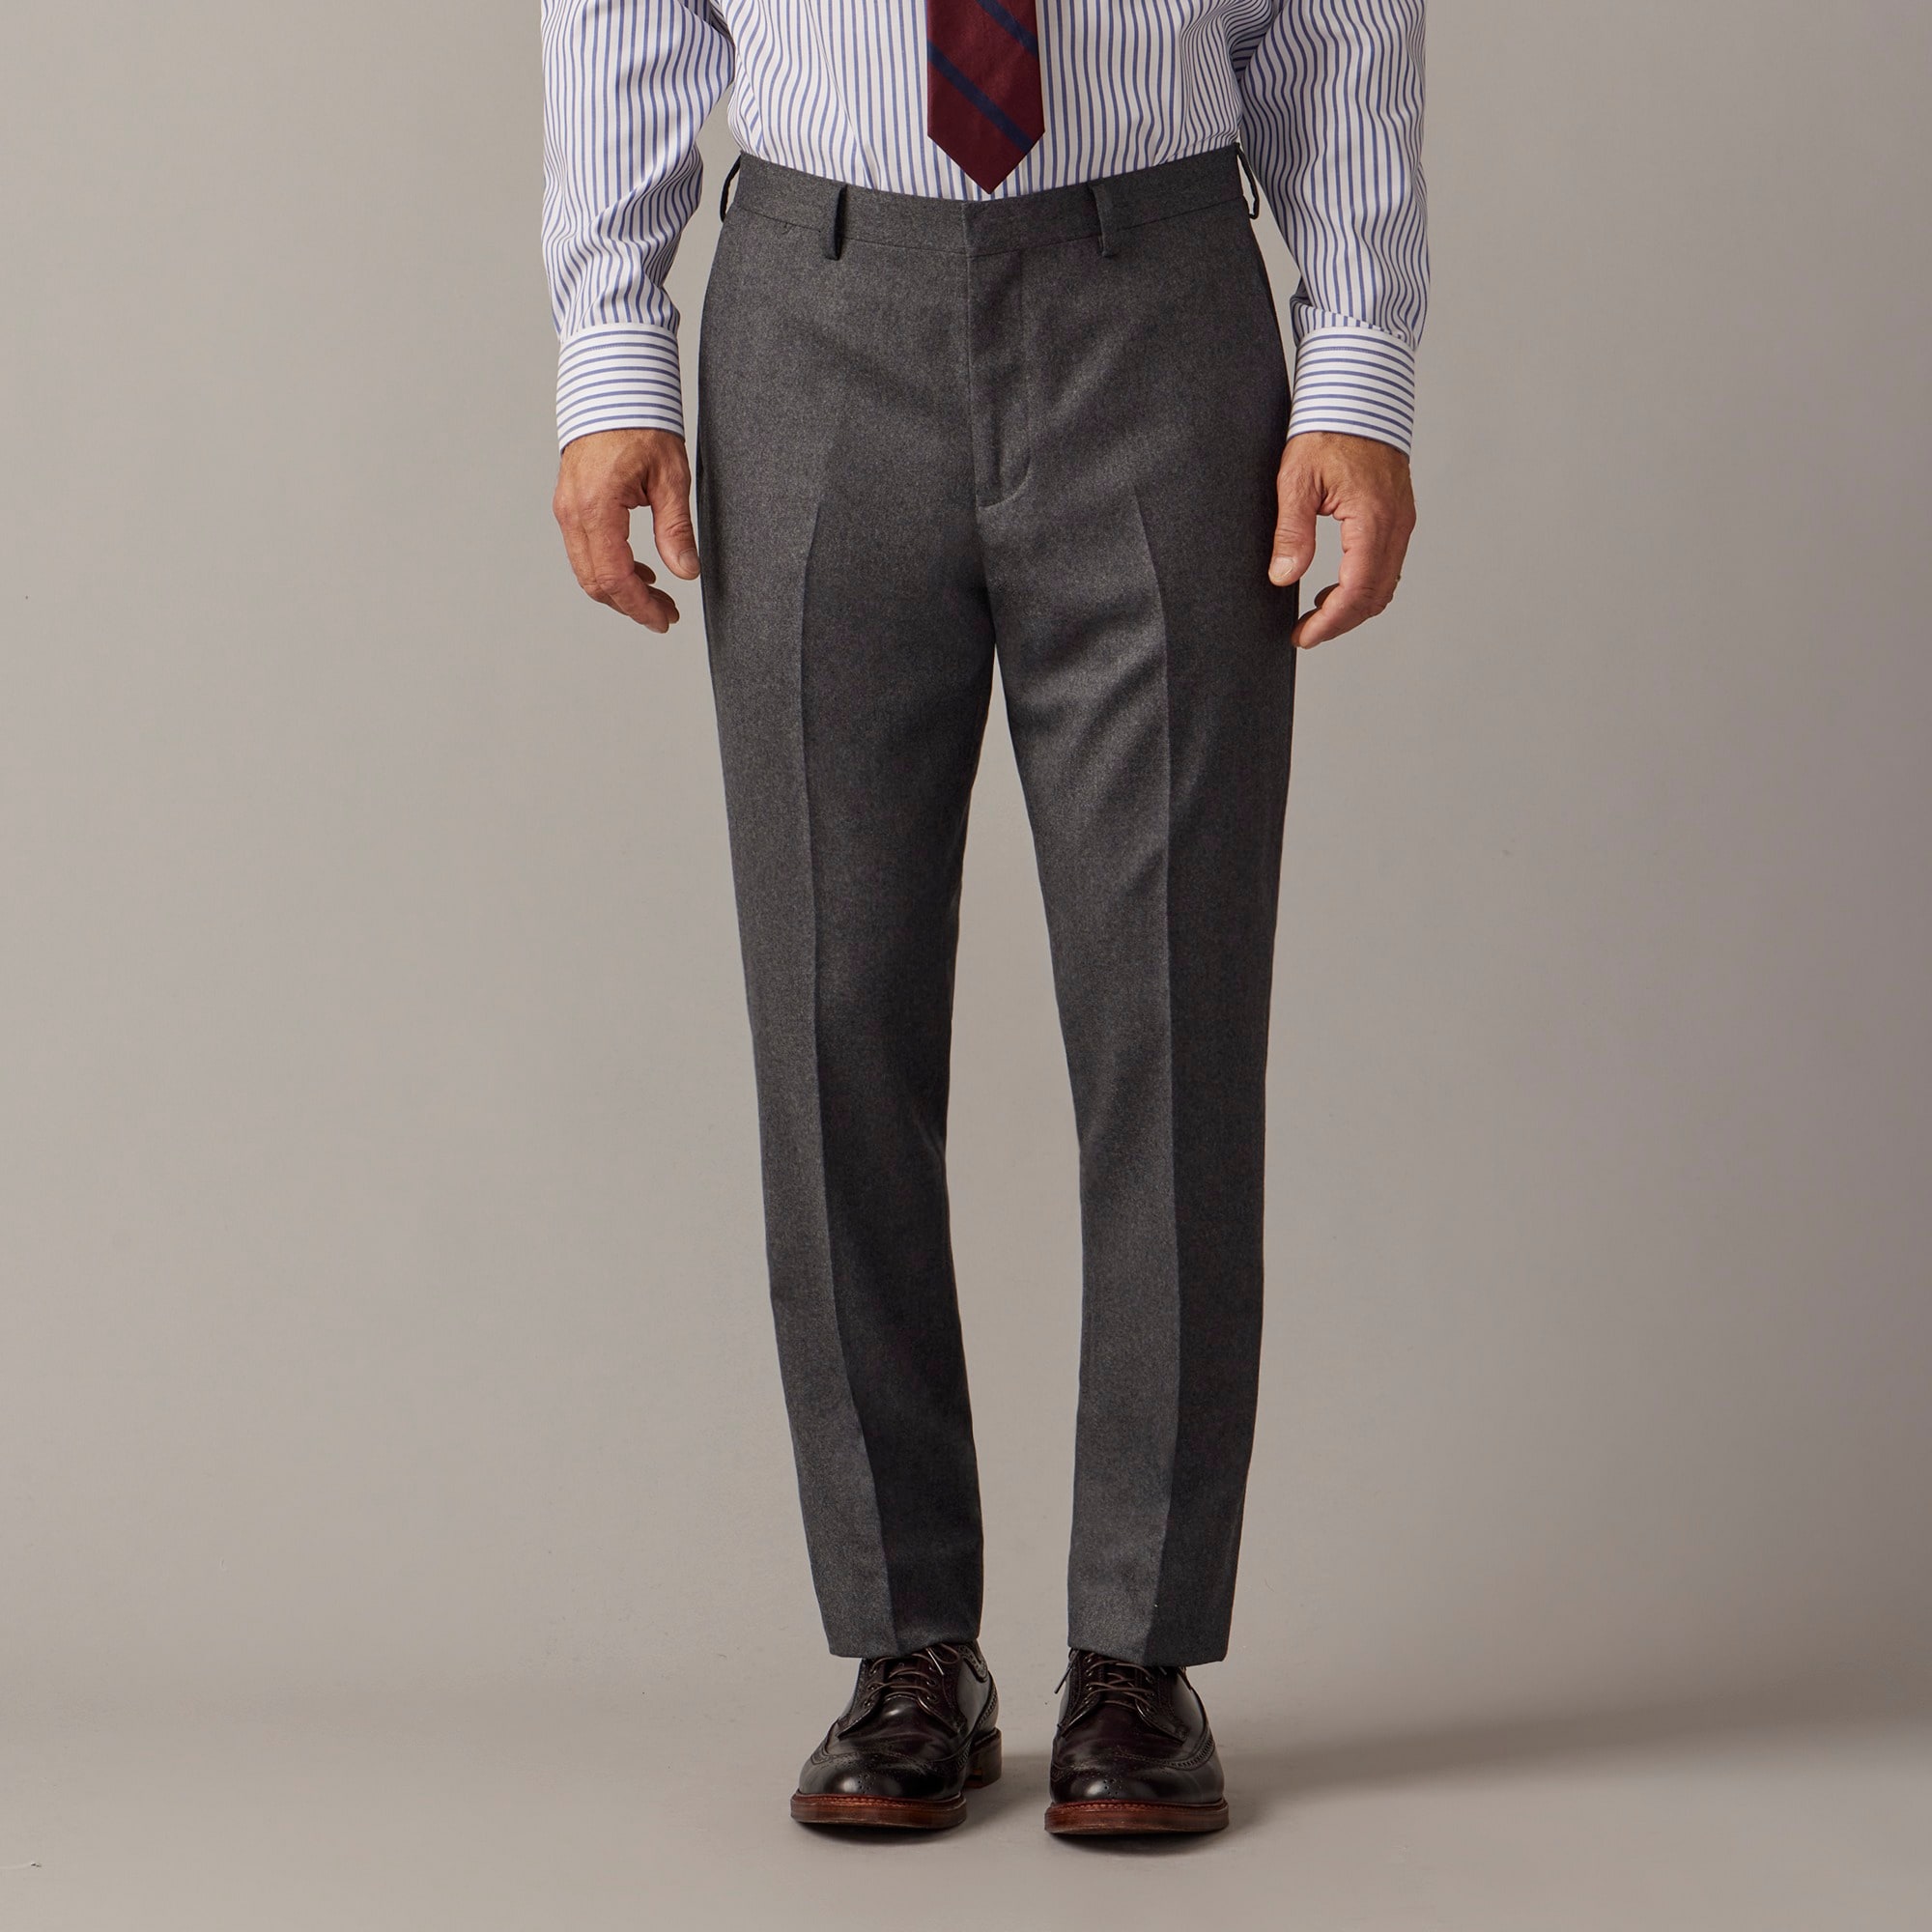 Jcrew Ludlow Slim-fit suit pant in Italian wool flannel